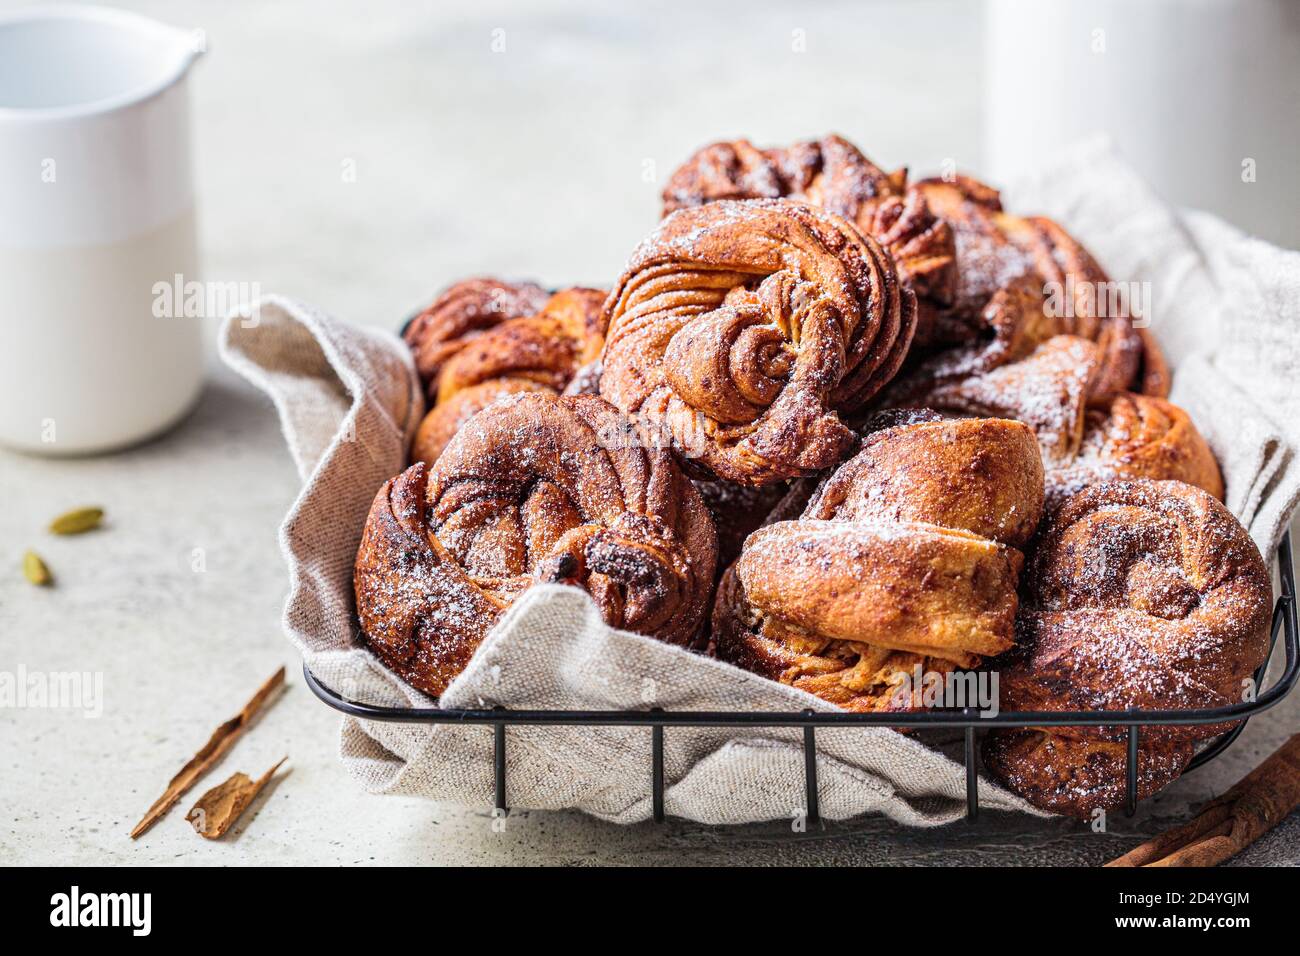 Petits pains suédois avec cardamome et cannelle, fond clair. Concept de cuisine scandinave. Banque D'Images